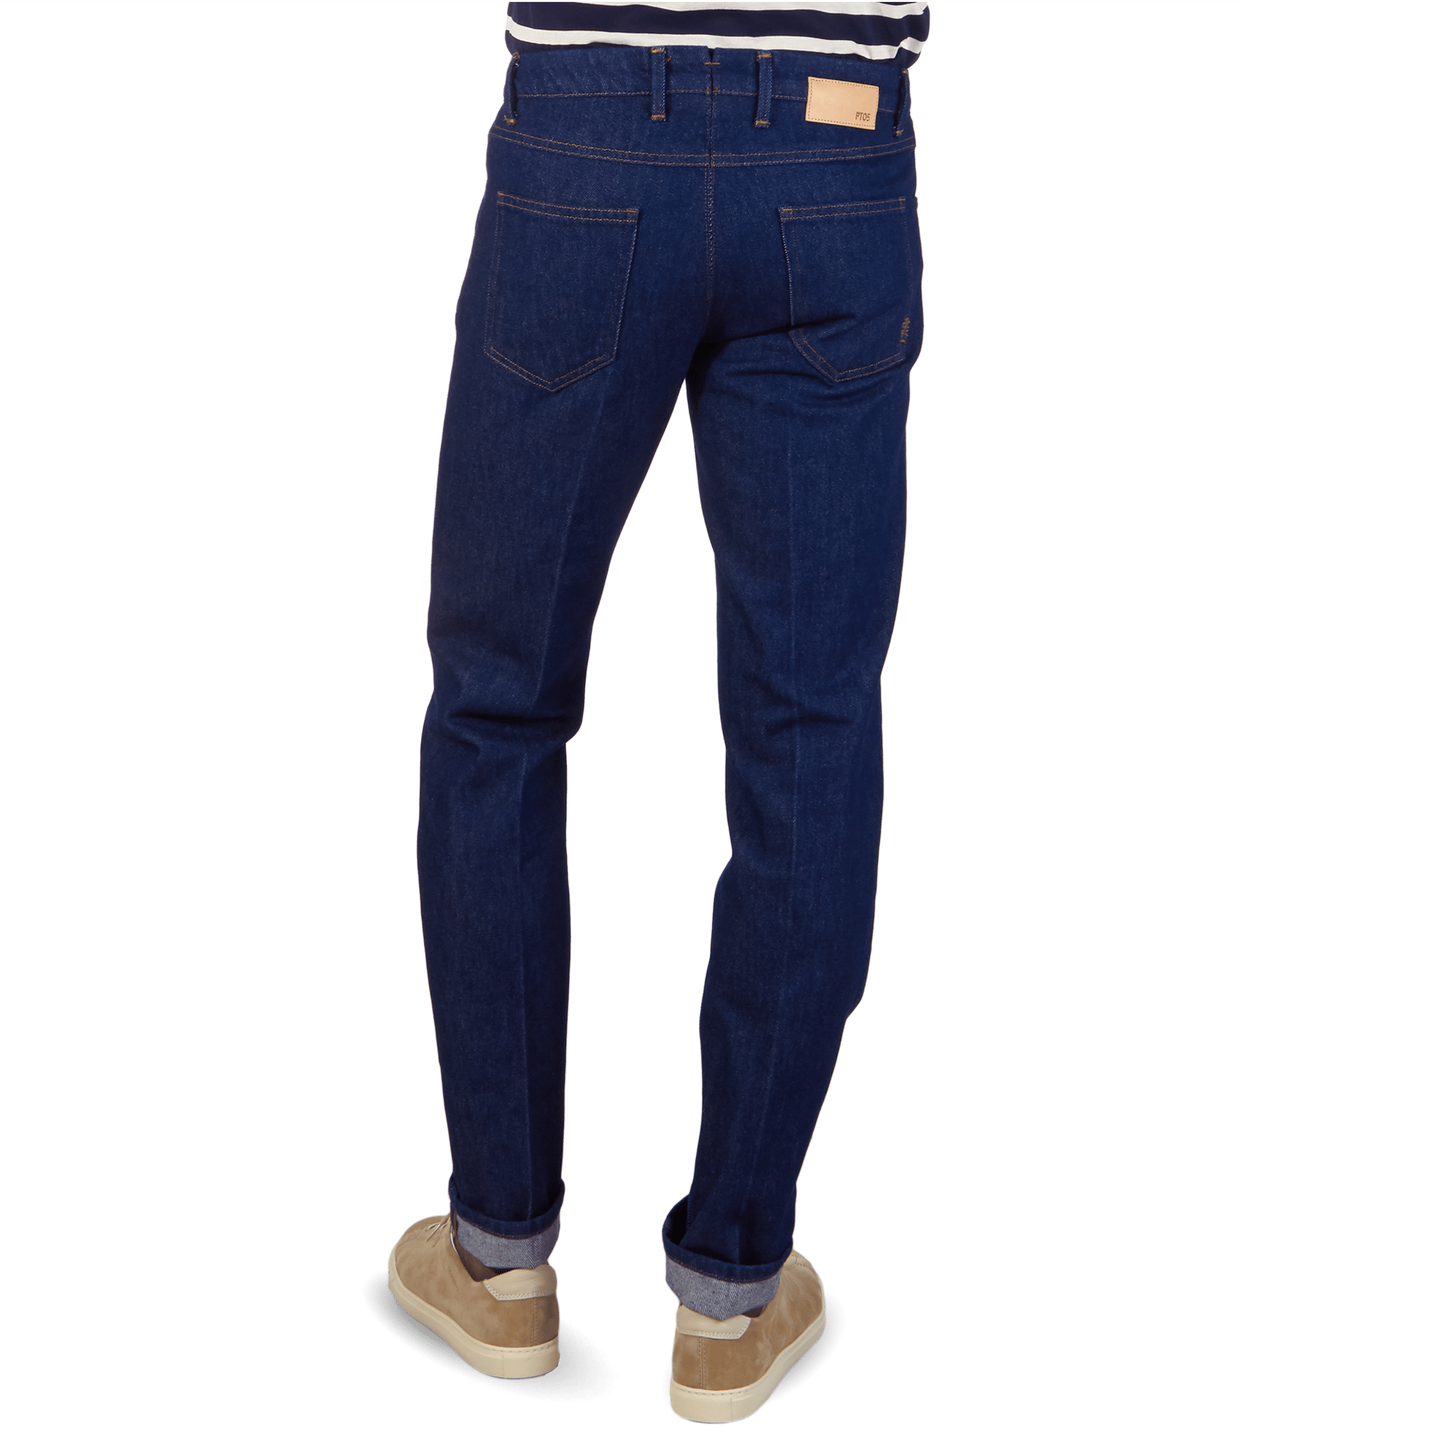 navy blue cotton jeans